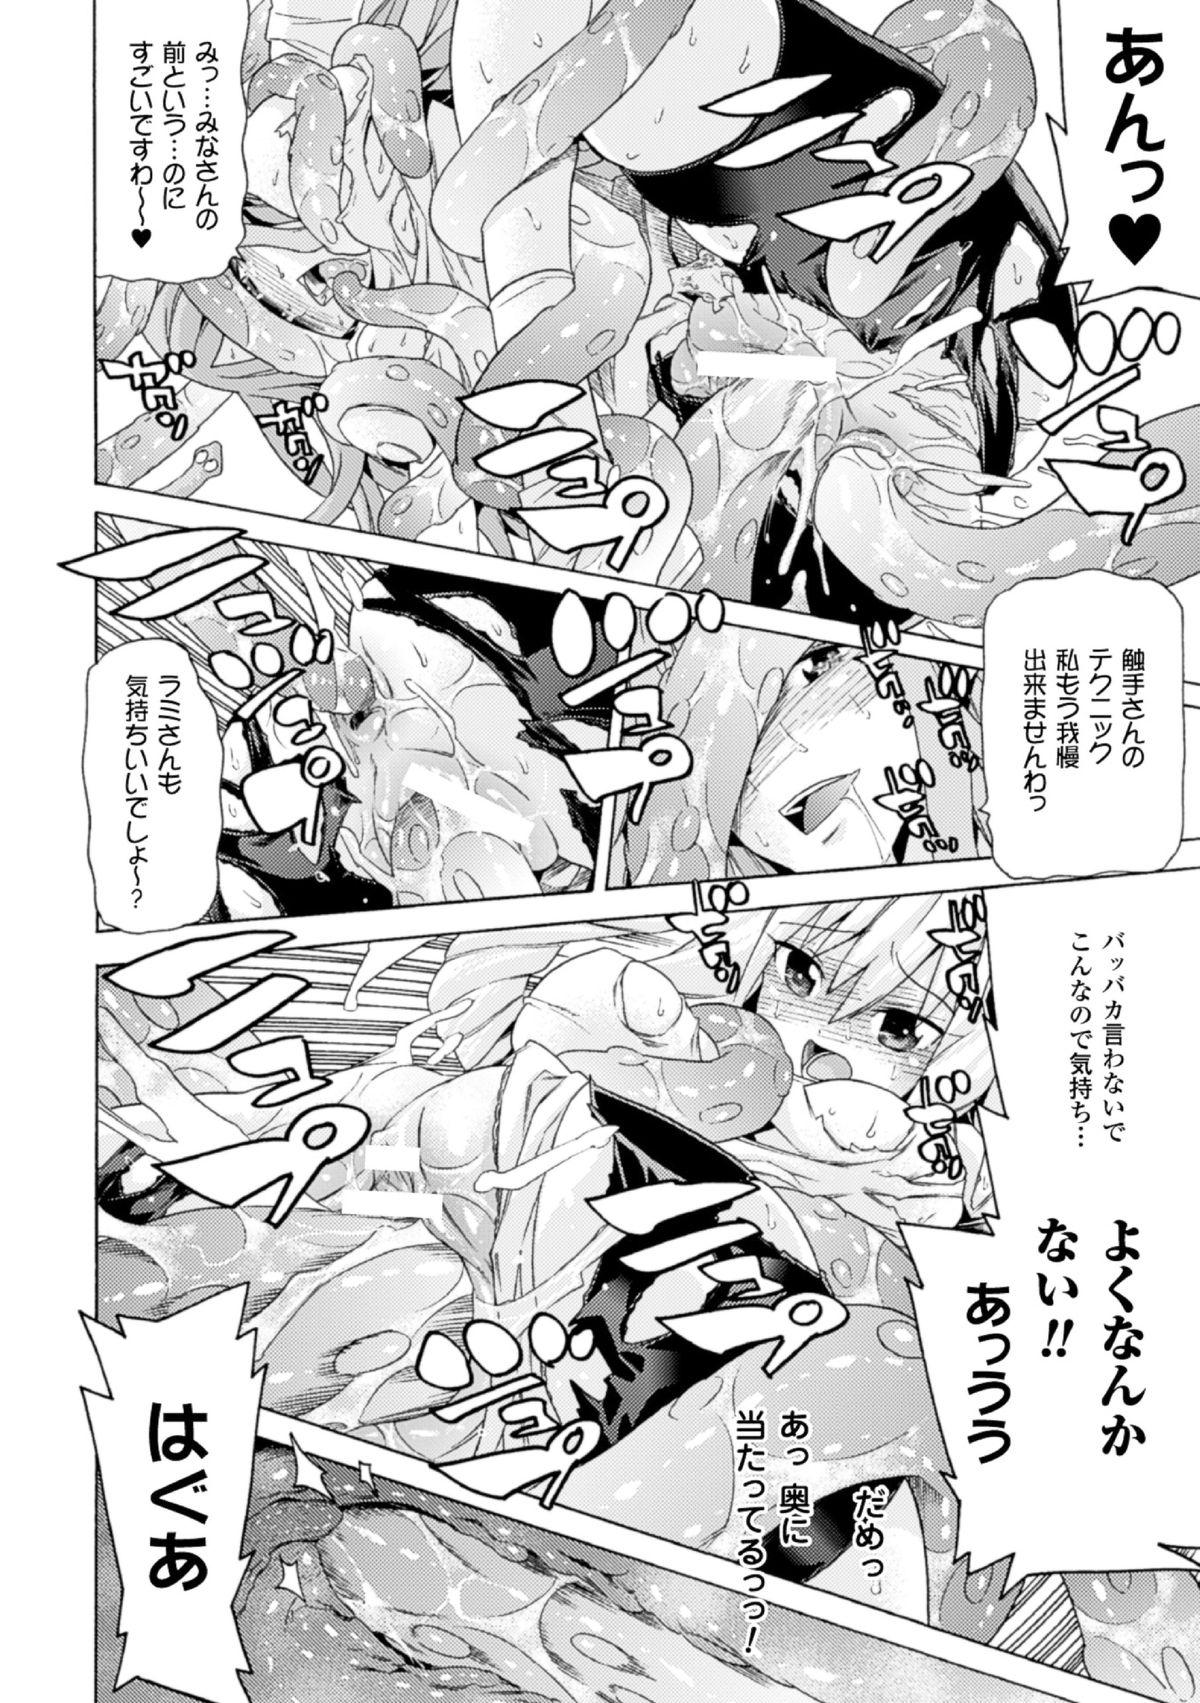 2D Comic Magazine - Monster Musume ga Tsudou Ishuzoku Gakuen e Youkoso! Vol. 2 19